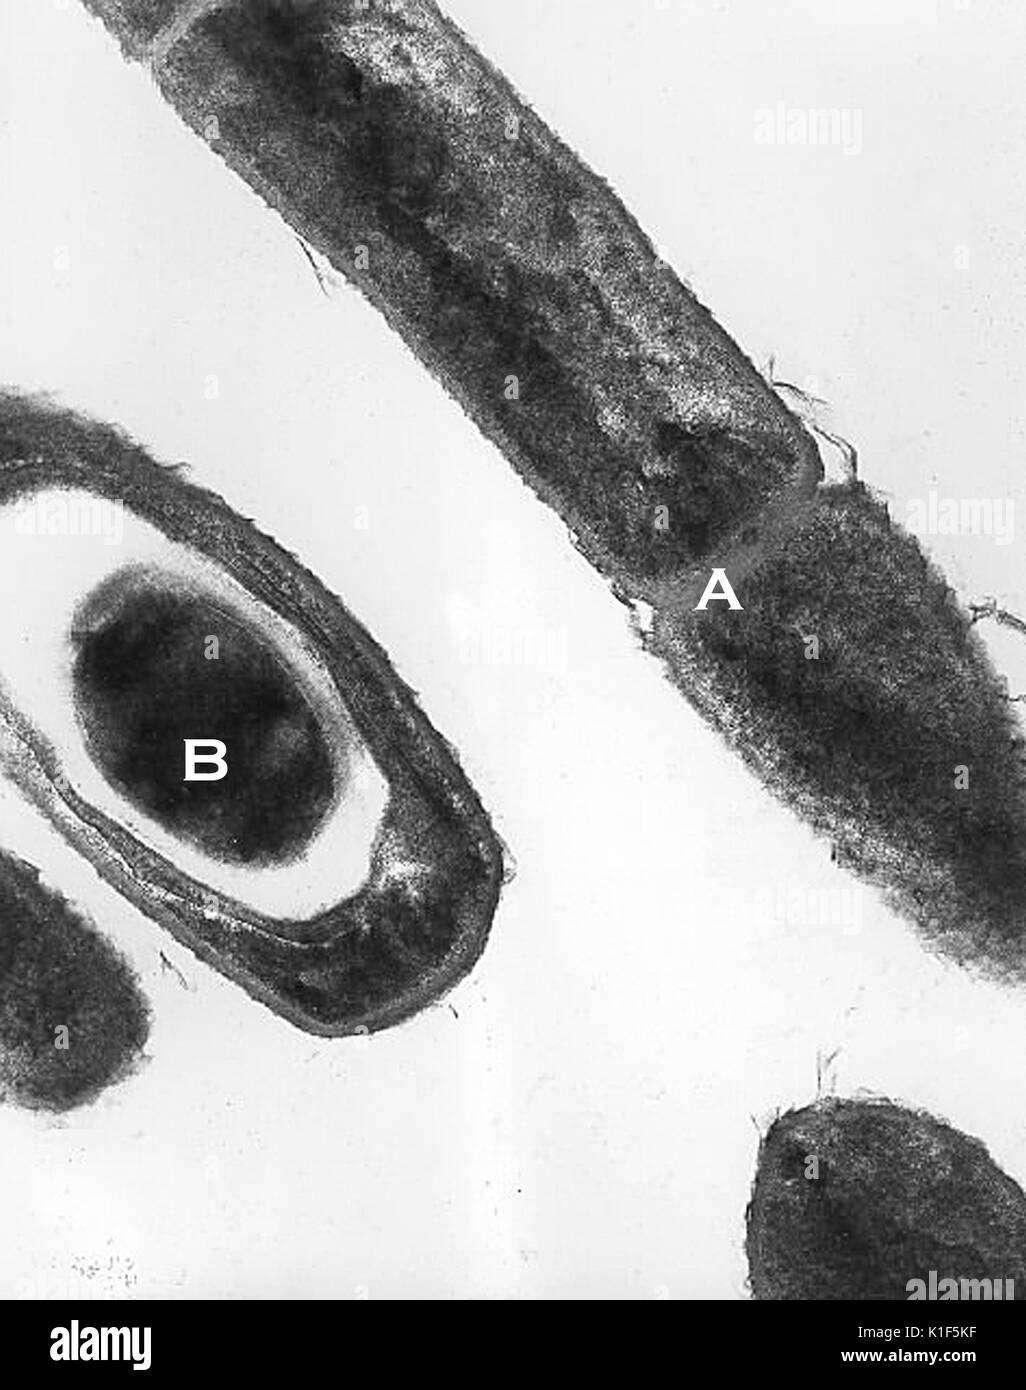 Transmission Electron Micrograph von Bacillus anthracis. Transmission Electron micrographic Bild von Bacillus anthracis Milzbrand aus einer Kultur, die die Zellteilung (A) und Sporen (B). Bild mit freundlicher Genehmigung von CDC/Dr. Sherif Zaki, Elizabeth Weiß, 2001. Stockfoto